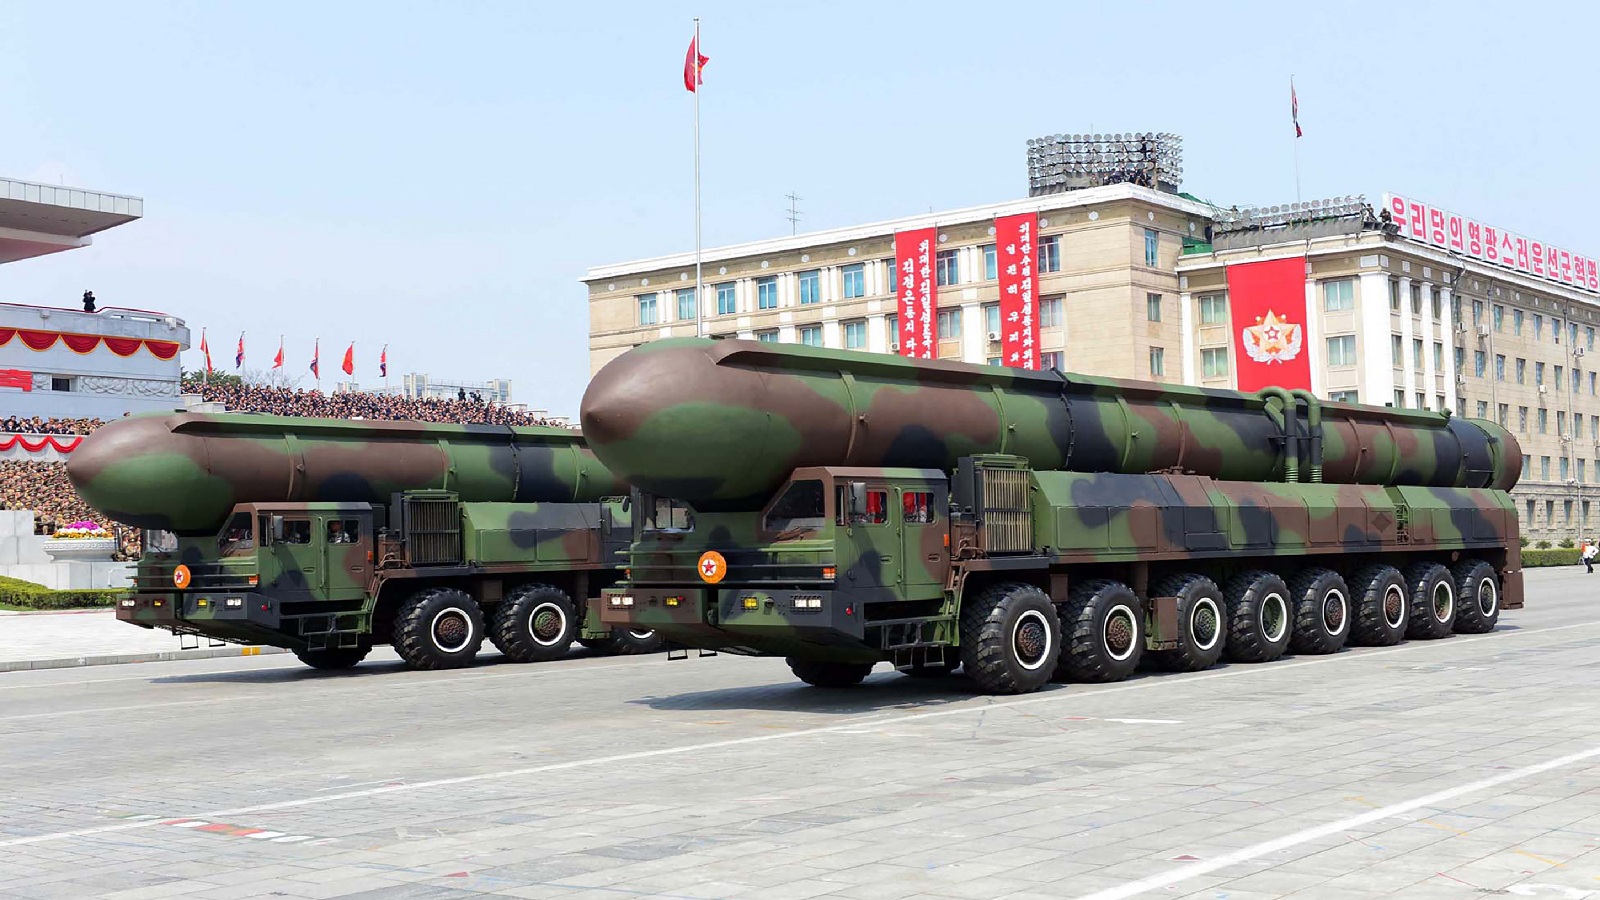 أزمة الصواريخ الكورية:خيارات صعبة لمواجهة مستحيلة